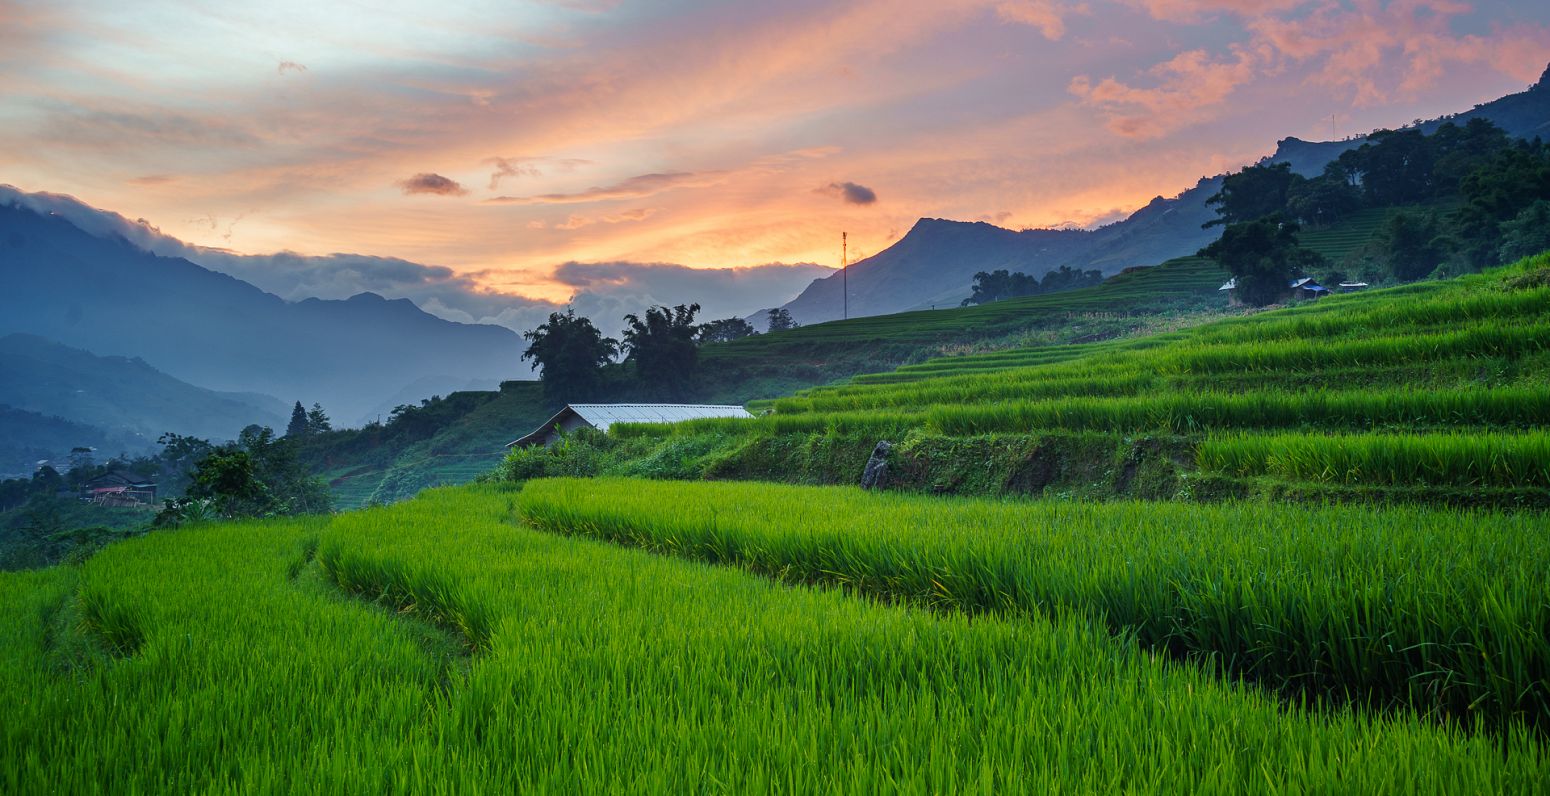 Sapa rice fields, Vietnam